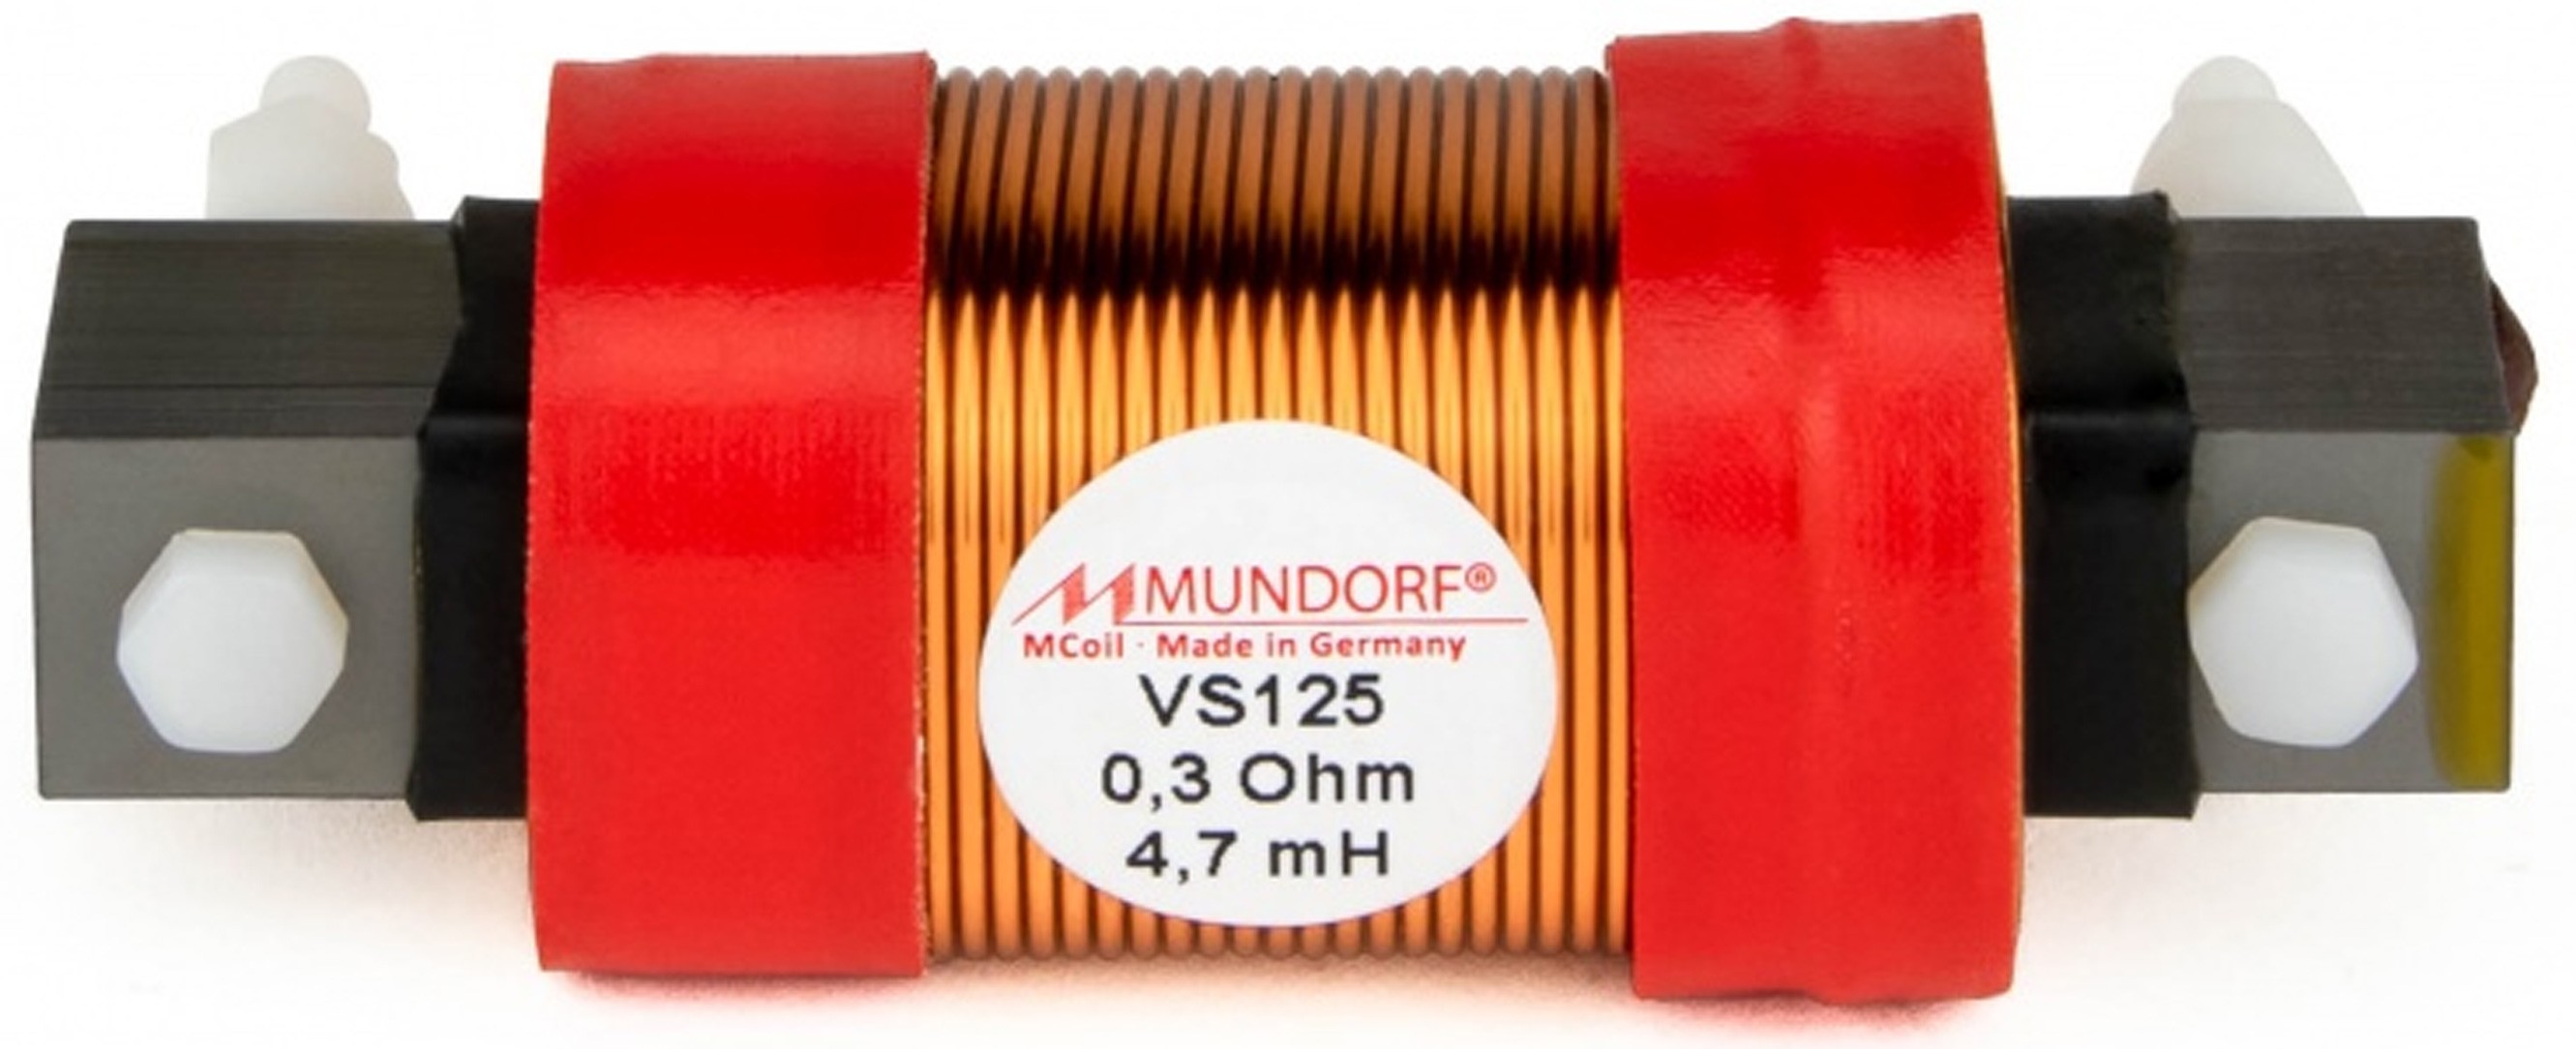 MUNDORF VS125-2.7 MCOIL ICORE Copper Coil Feron Core 2.7mH